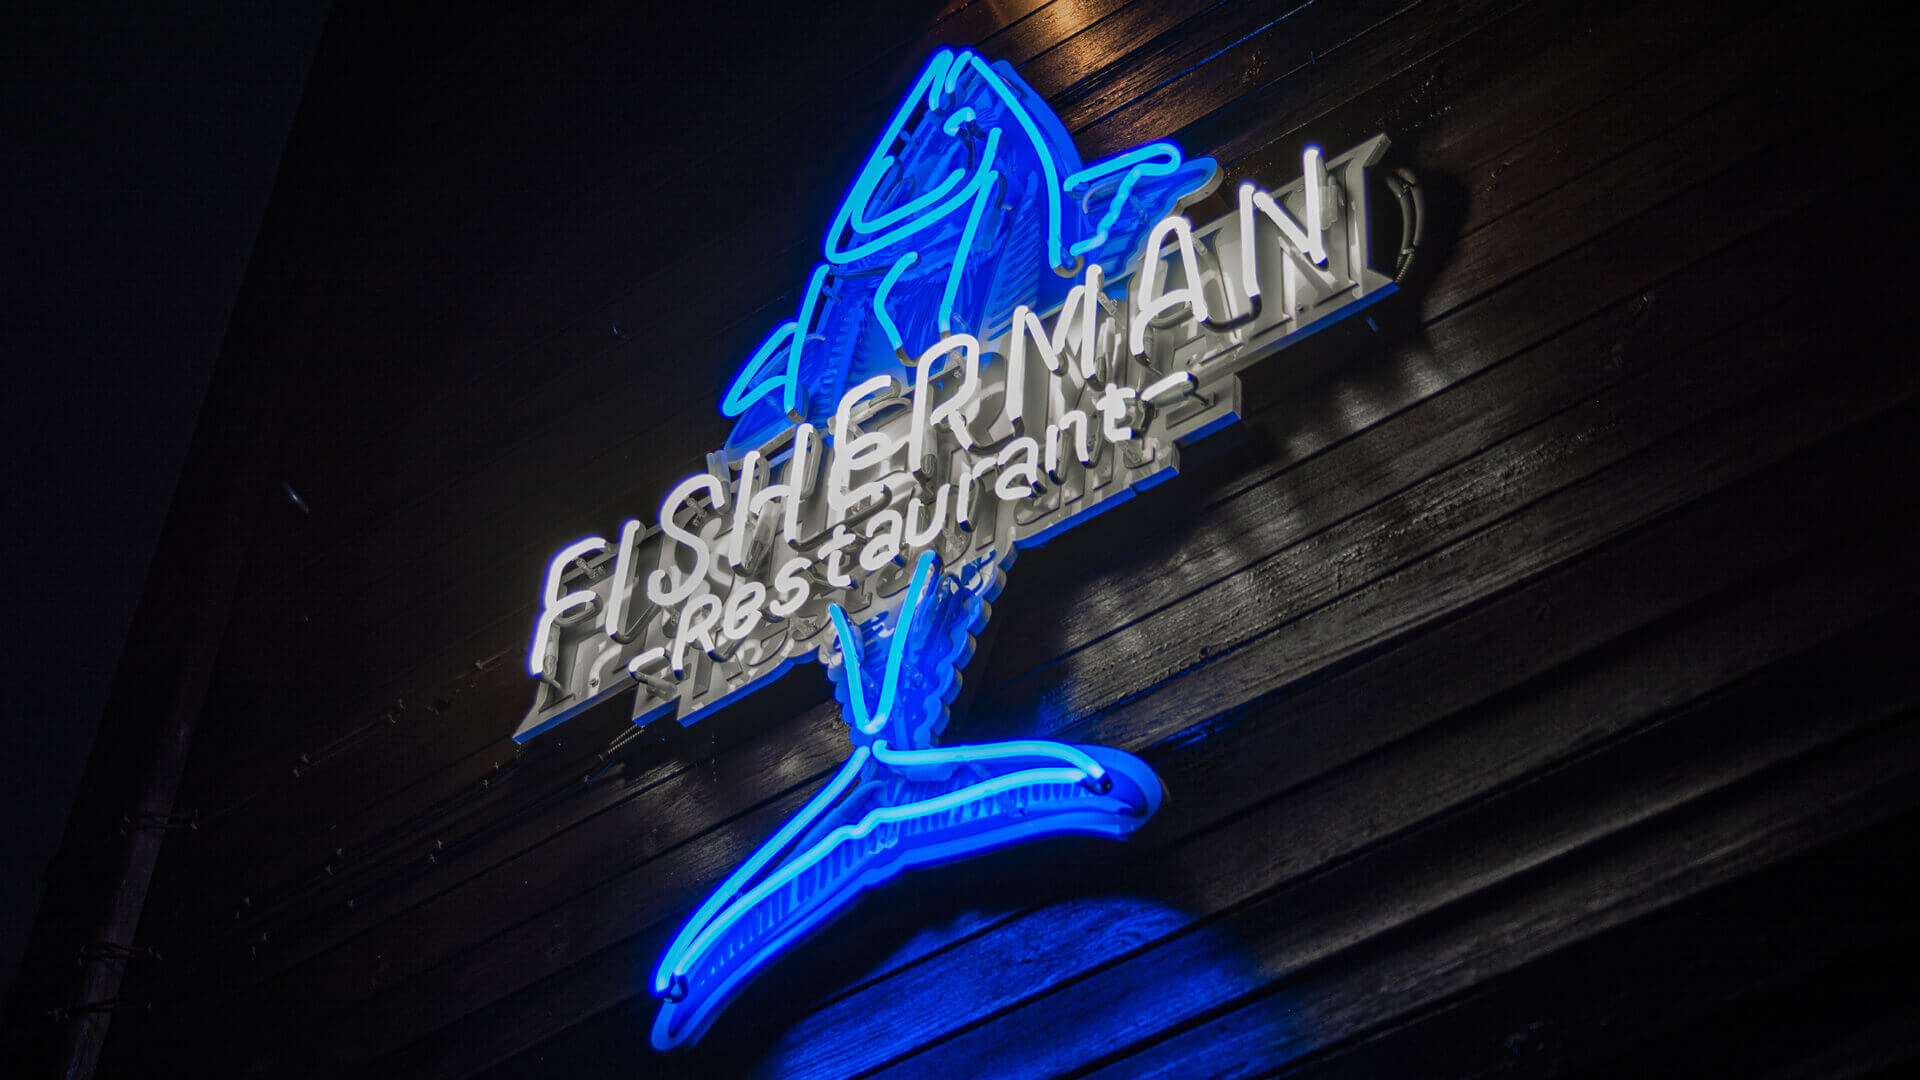 pêcheur pêcheur homme - pêcheur-restaurant-néon-blanc-bleu-néon-sur-le-mur-restaurant-néon-sur-desks-néon-à-hauteur-lumière-pêcheur-néon-à-l'entrée-sopot (28)  